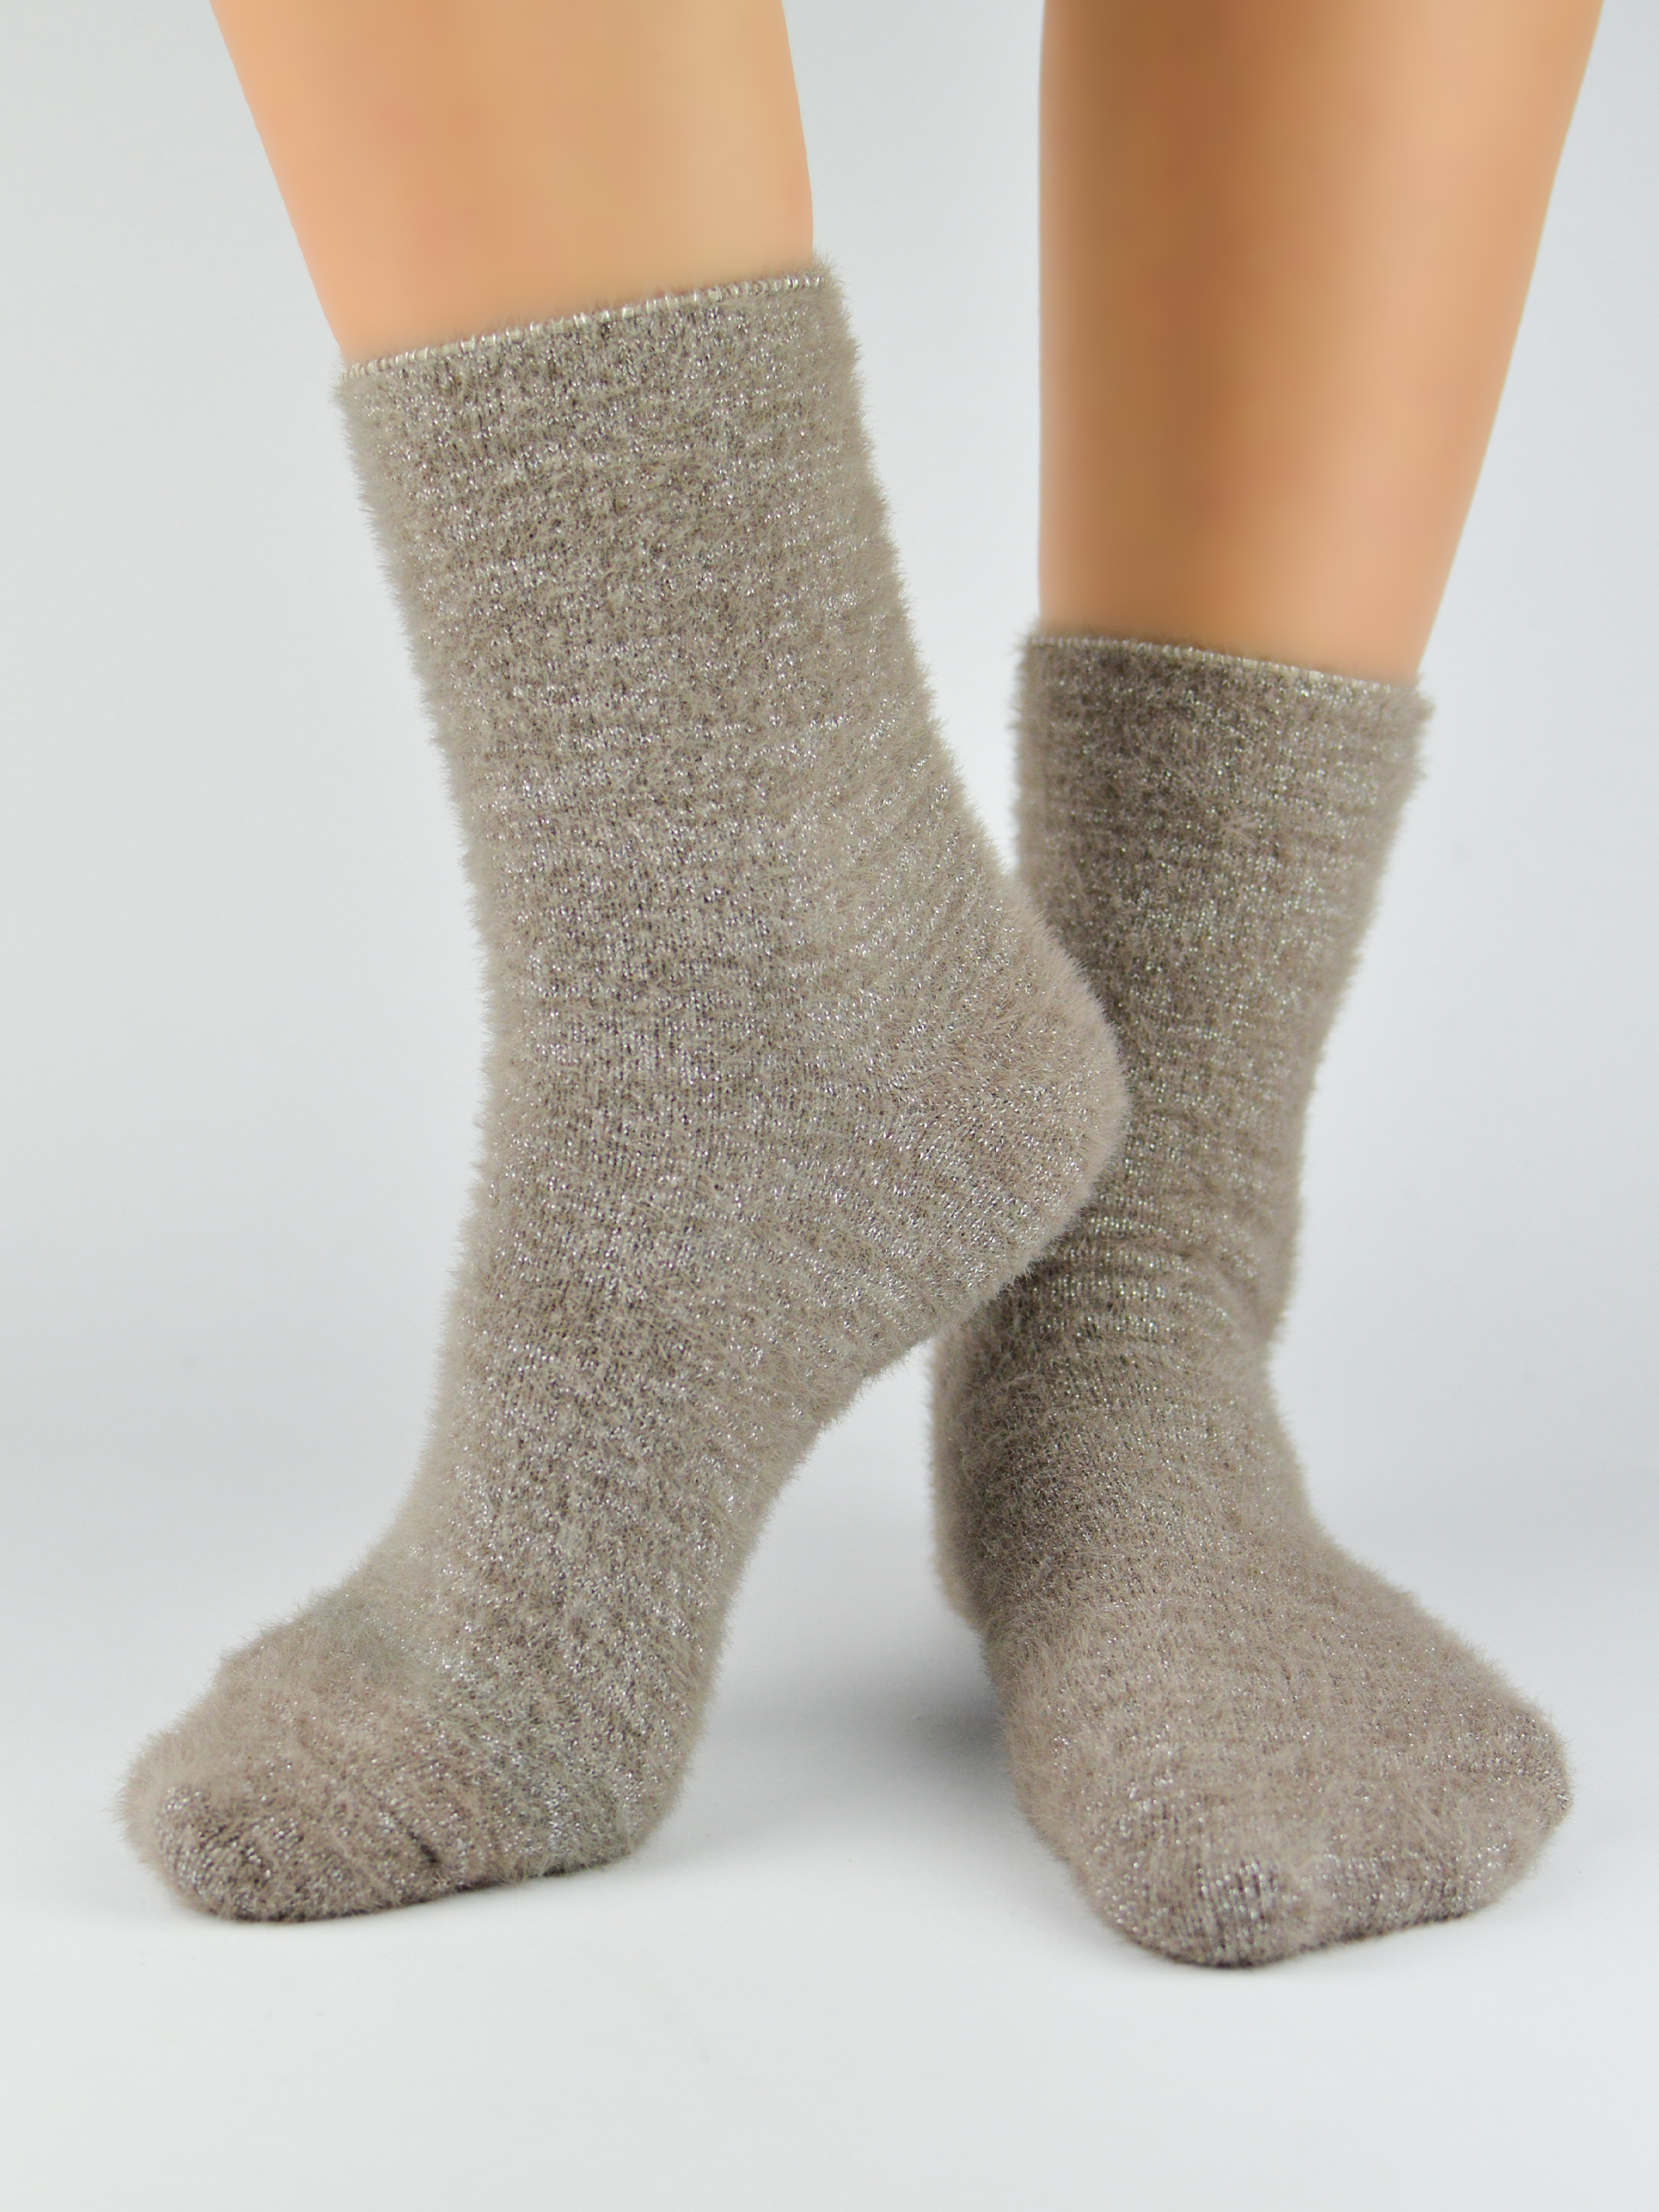 NOVITI Woman's Socks SB037-W-03